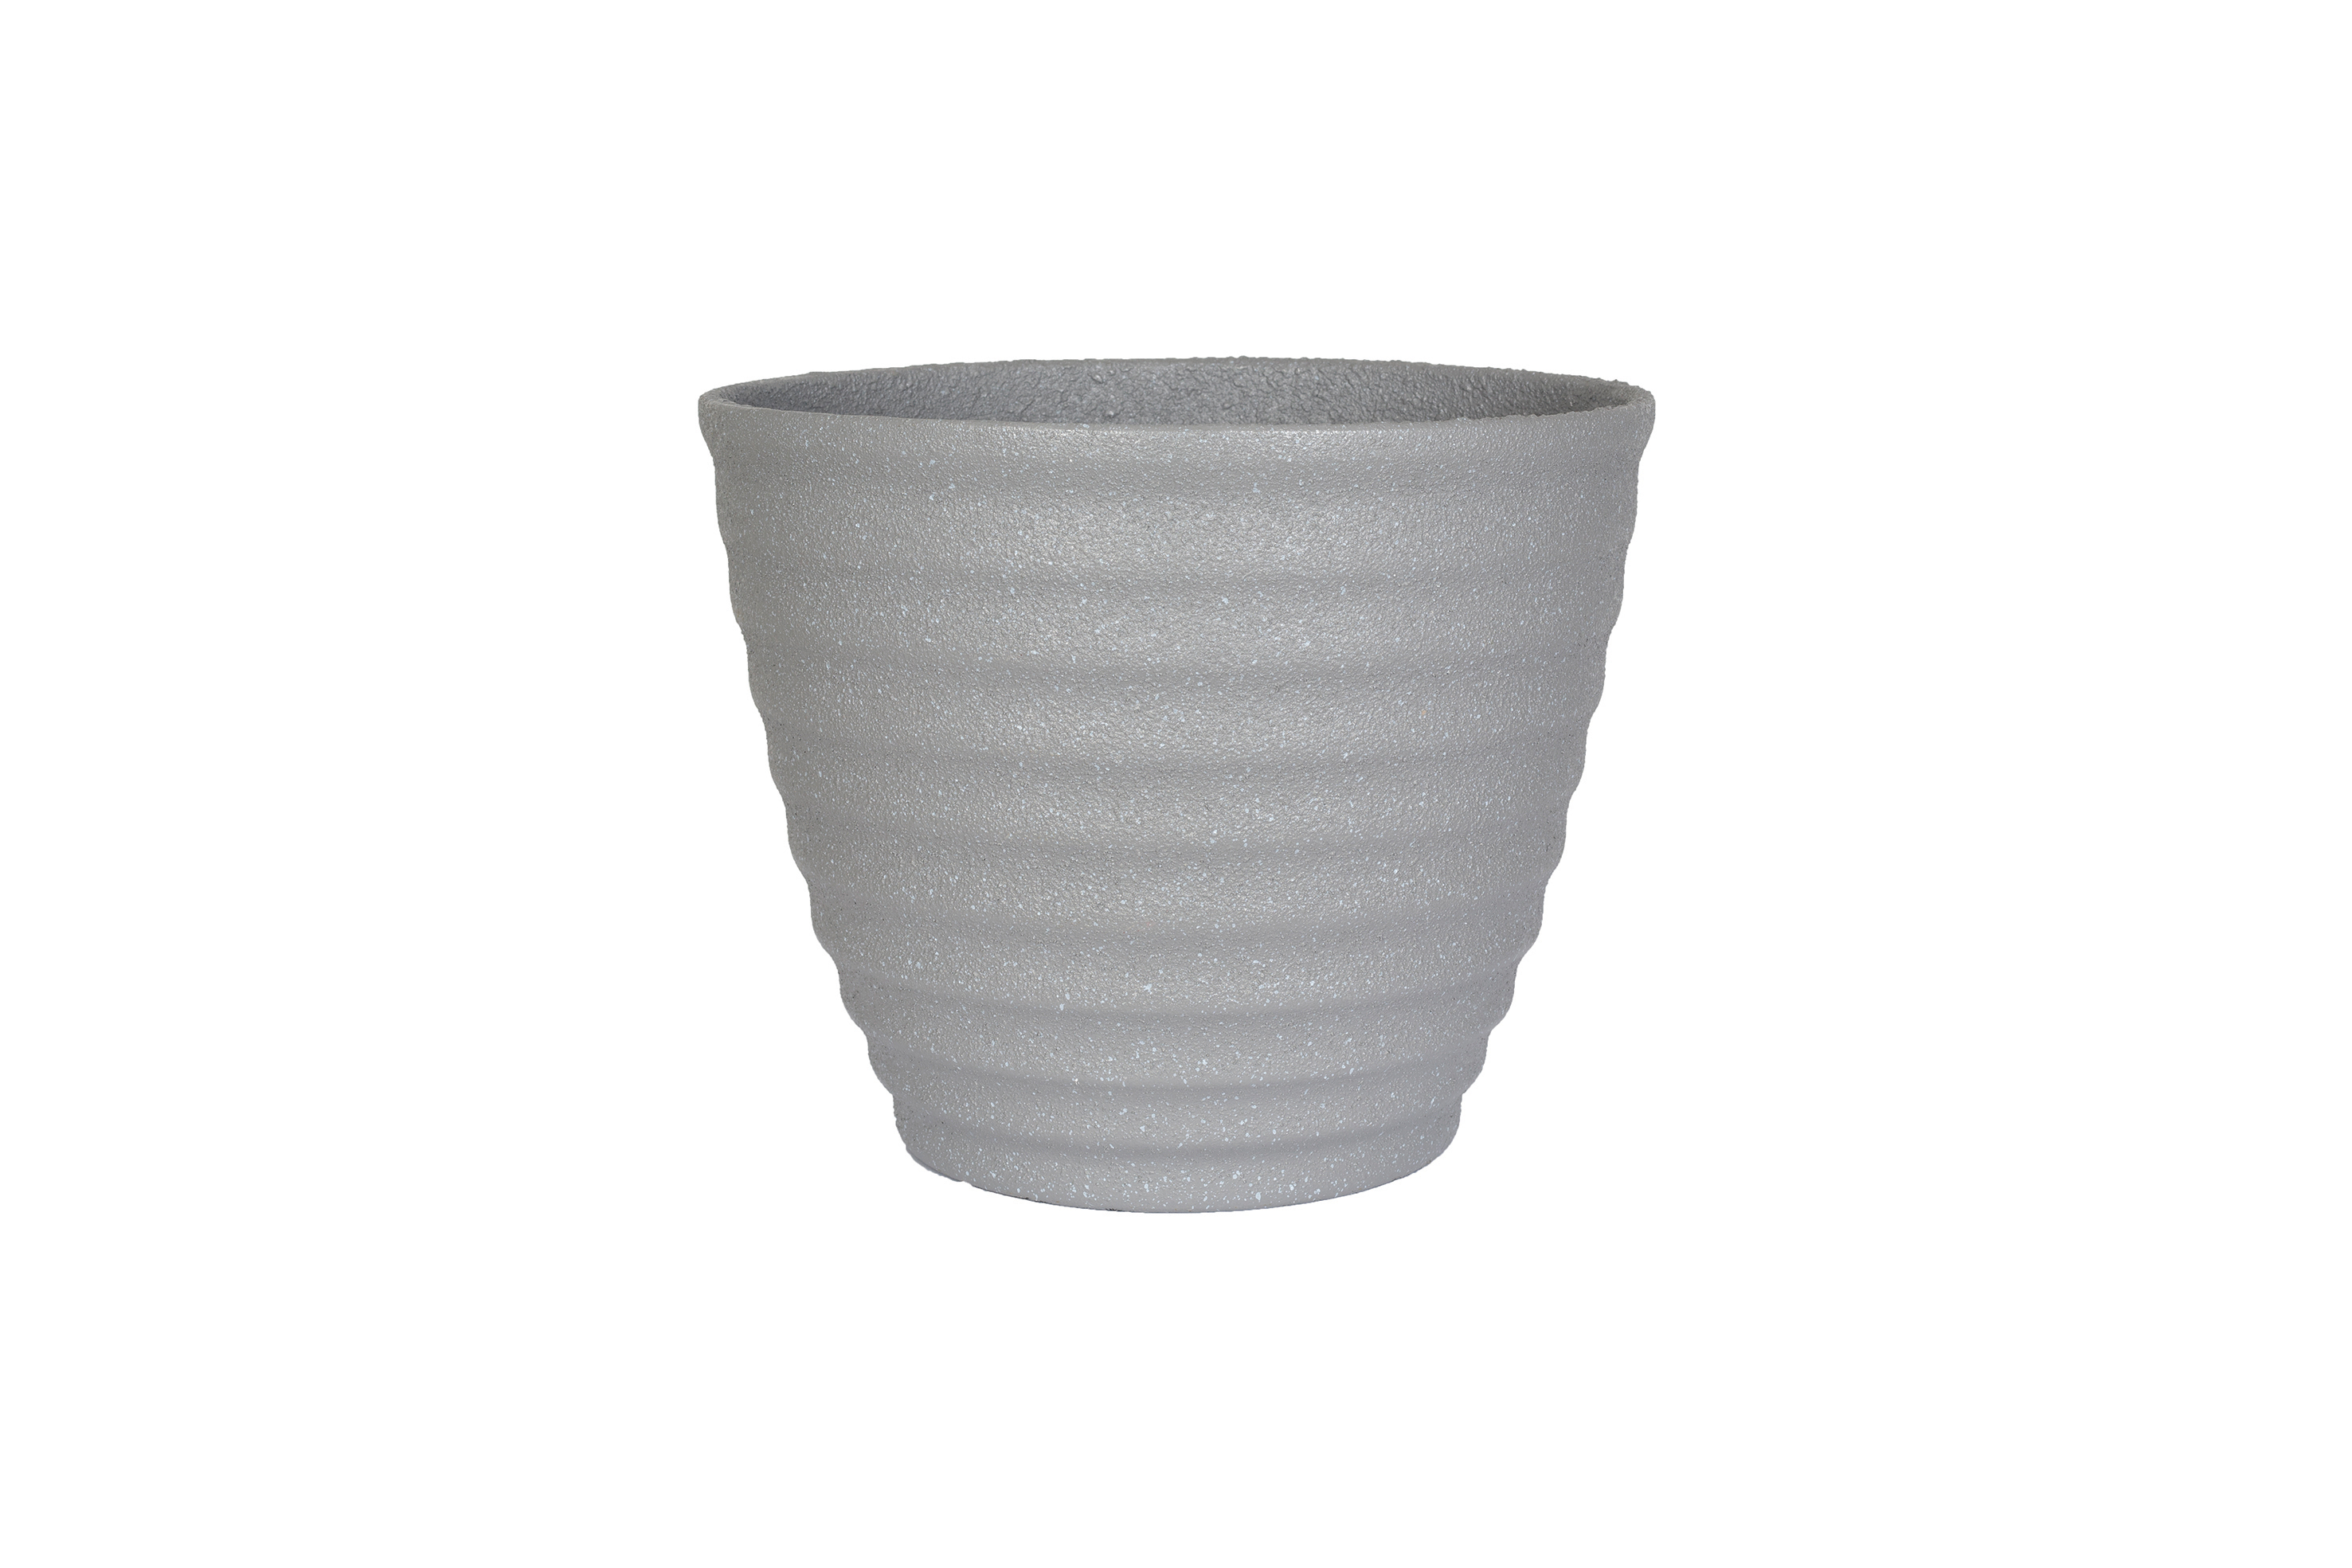 Kelkay Terrazzo and Stone Hudson Small Pot (Grey)